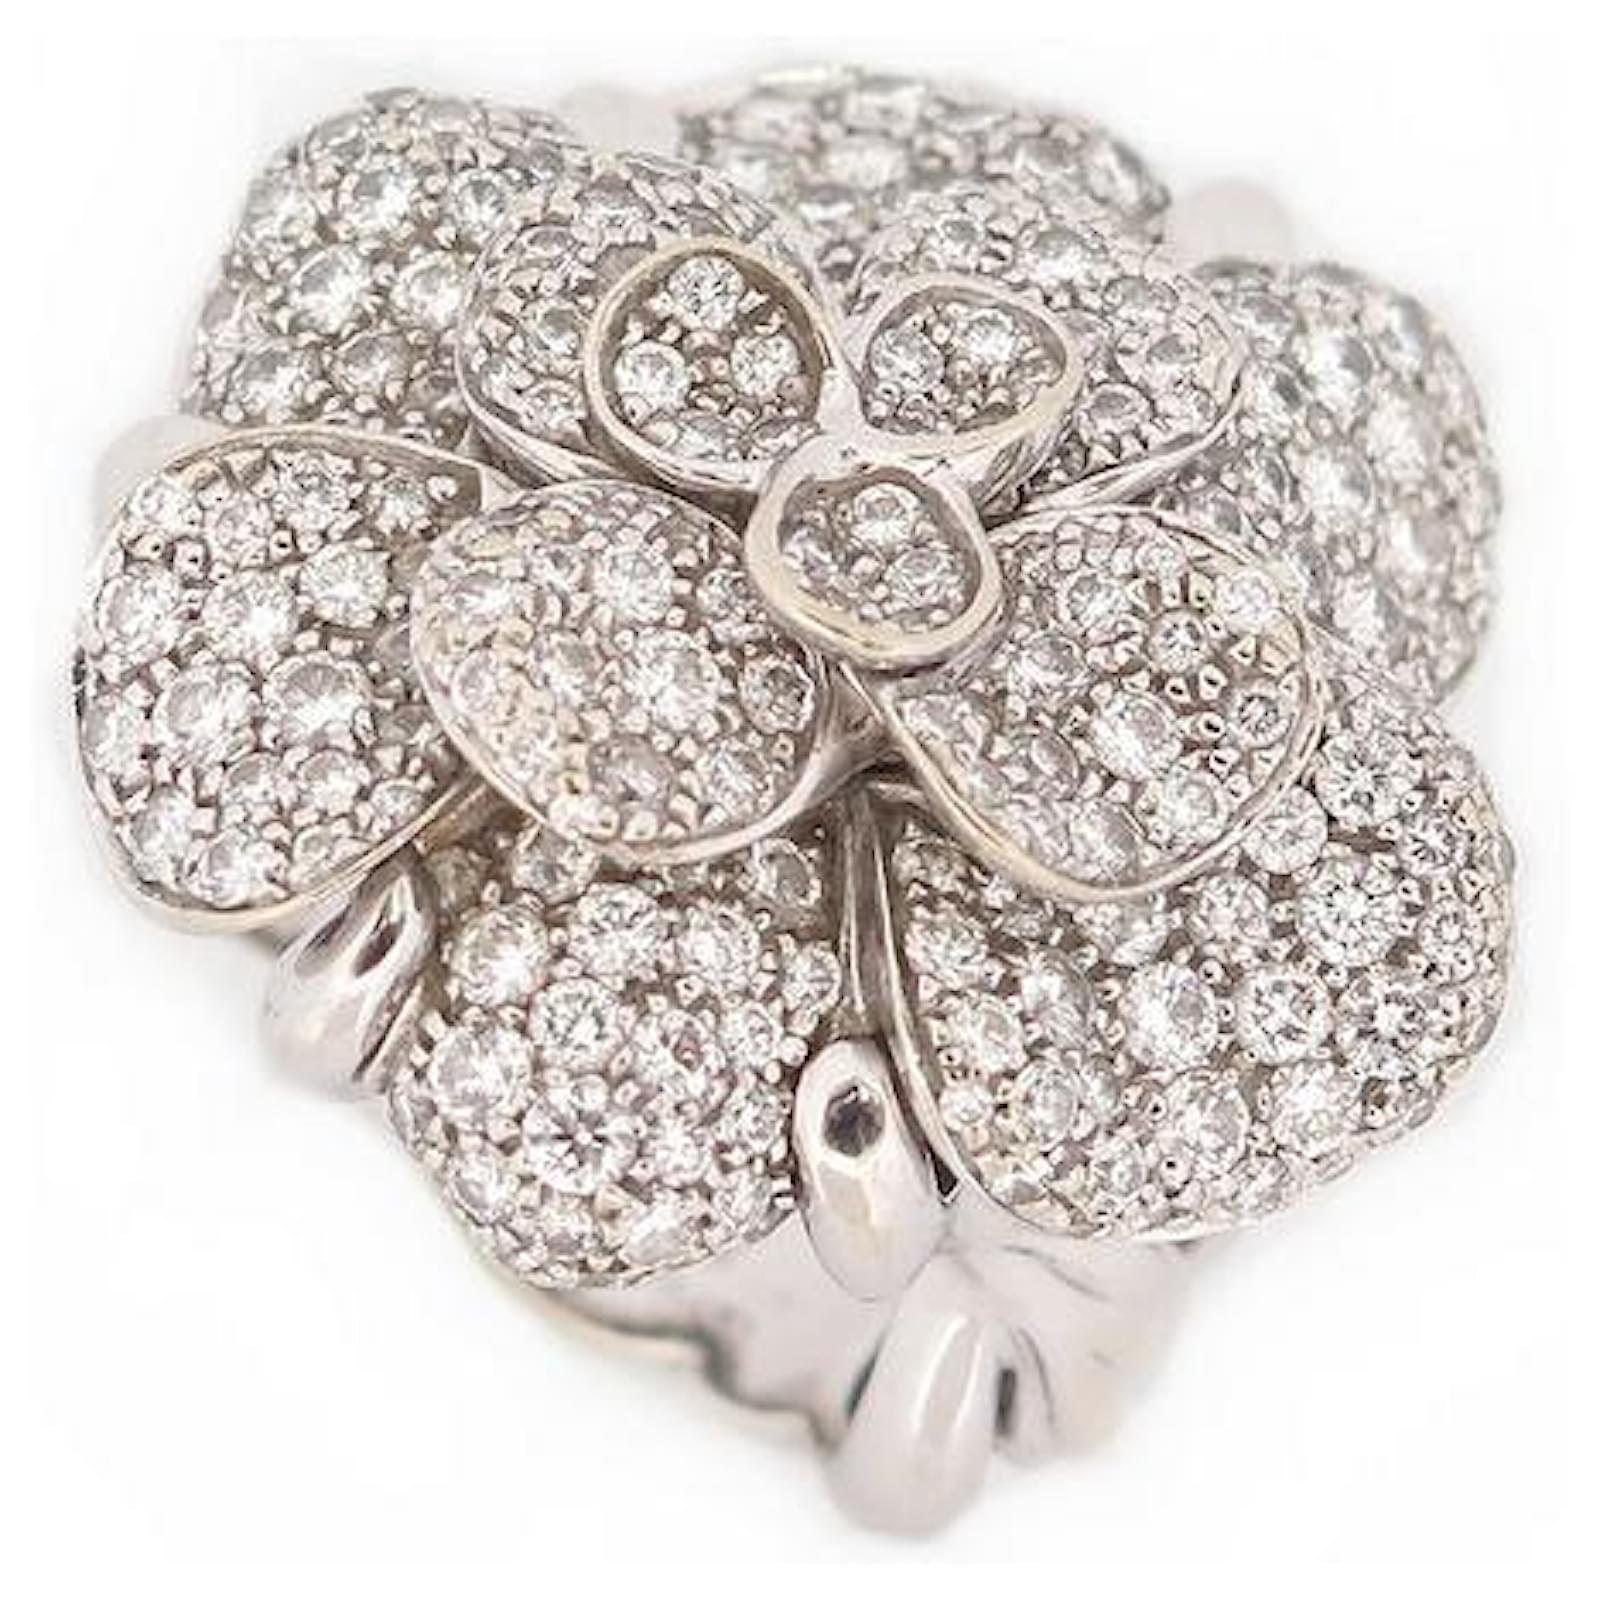 Chanel Profil de Camellia Diamond Gold Ring